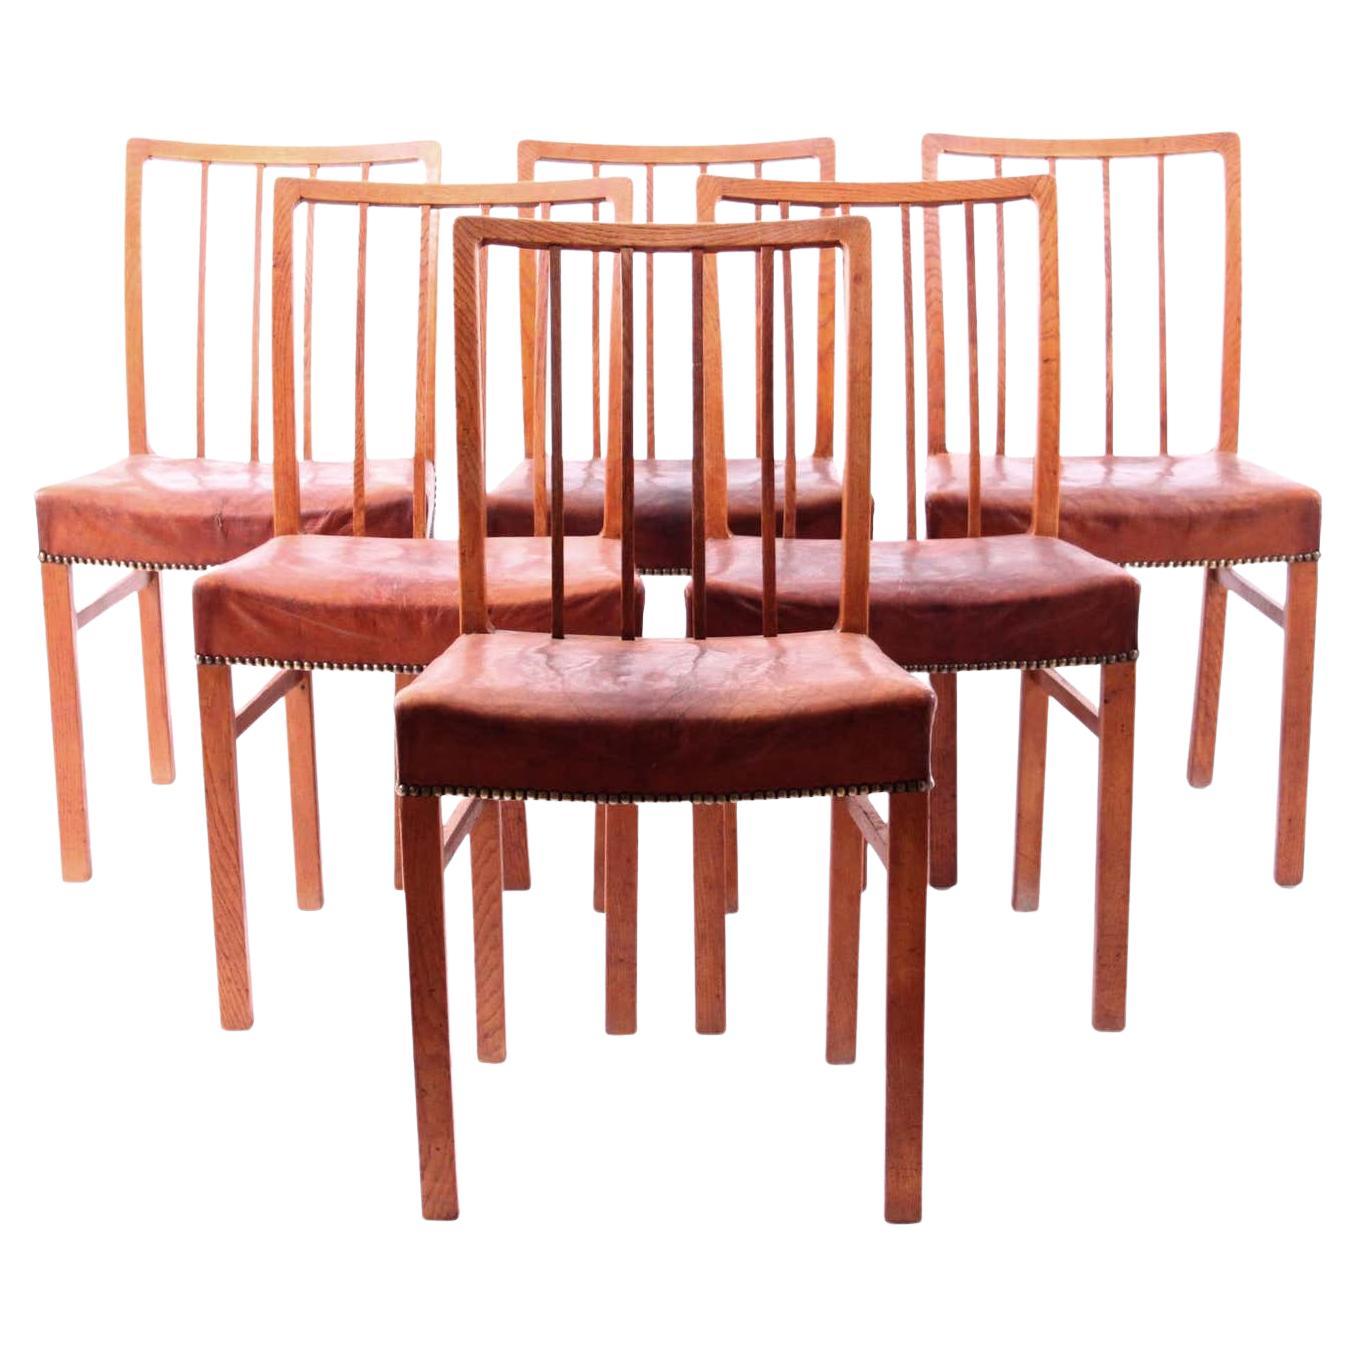 Ensemble de 6 chaises en chêne avec cuir nigérien patiné d'origine.

Jacob Kjær (1896-1957) était un designer de meubles et un ébéniste danois.
Kjær a reçu une formation d'ébéniste dans l'atelier de son père, qui était également fabricant de